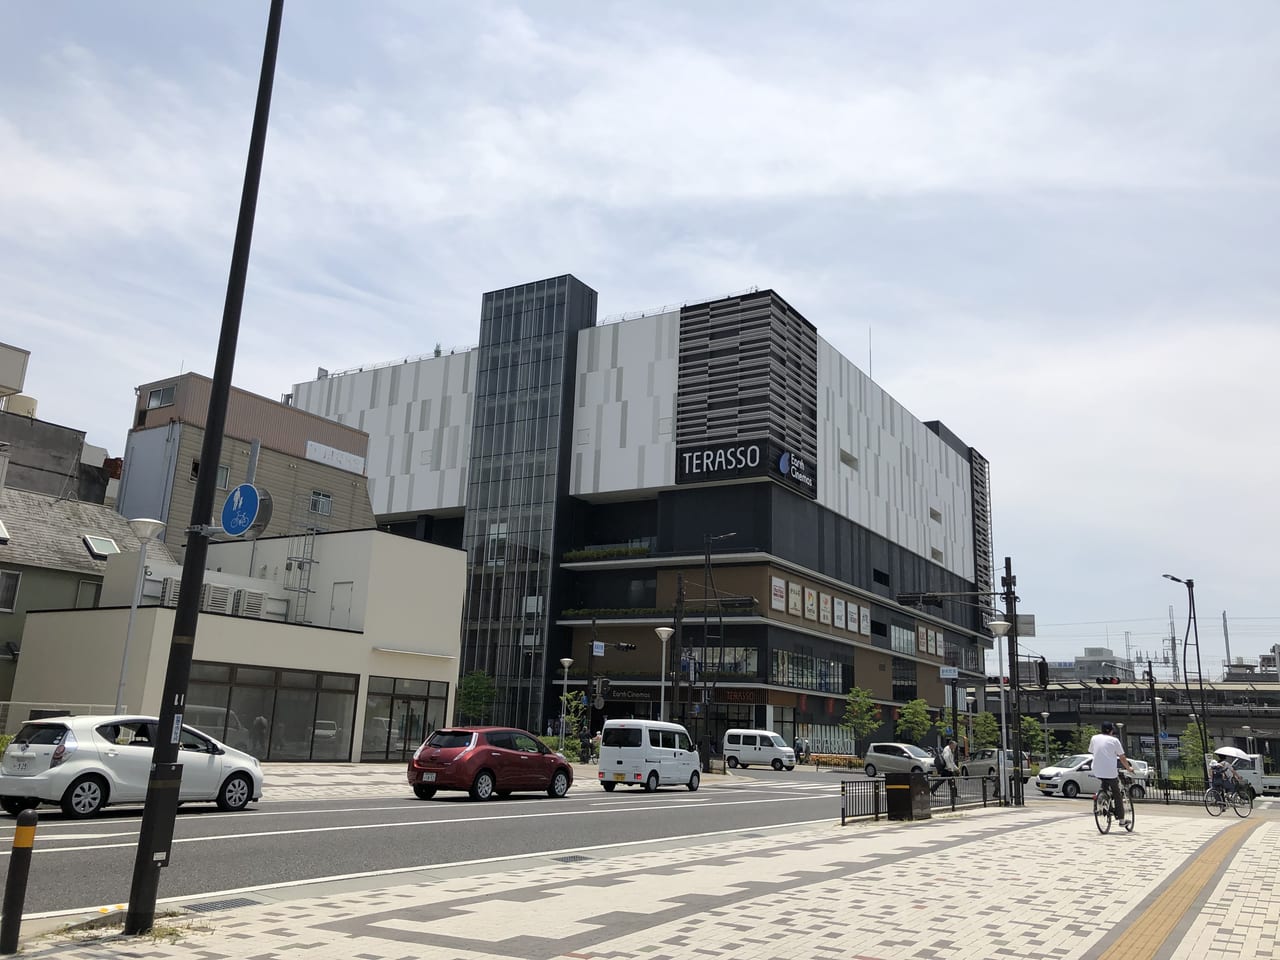 姫路市 国内最大級の12スクリーンを設けた映画館アースシネマズ姫路が完備された商業施設 テラッソ姫路 まもなく4周年を迎えます 号外net 姫路市